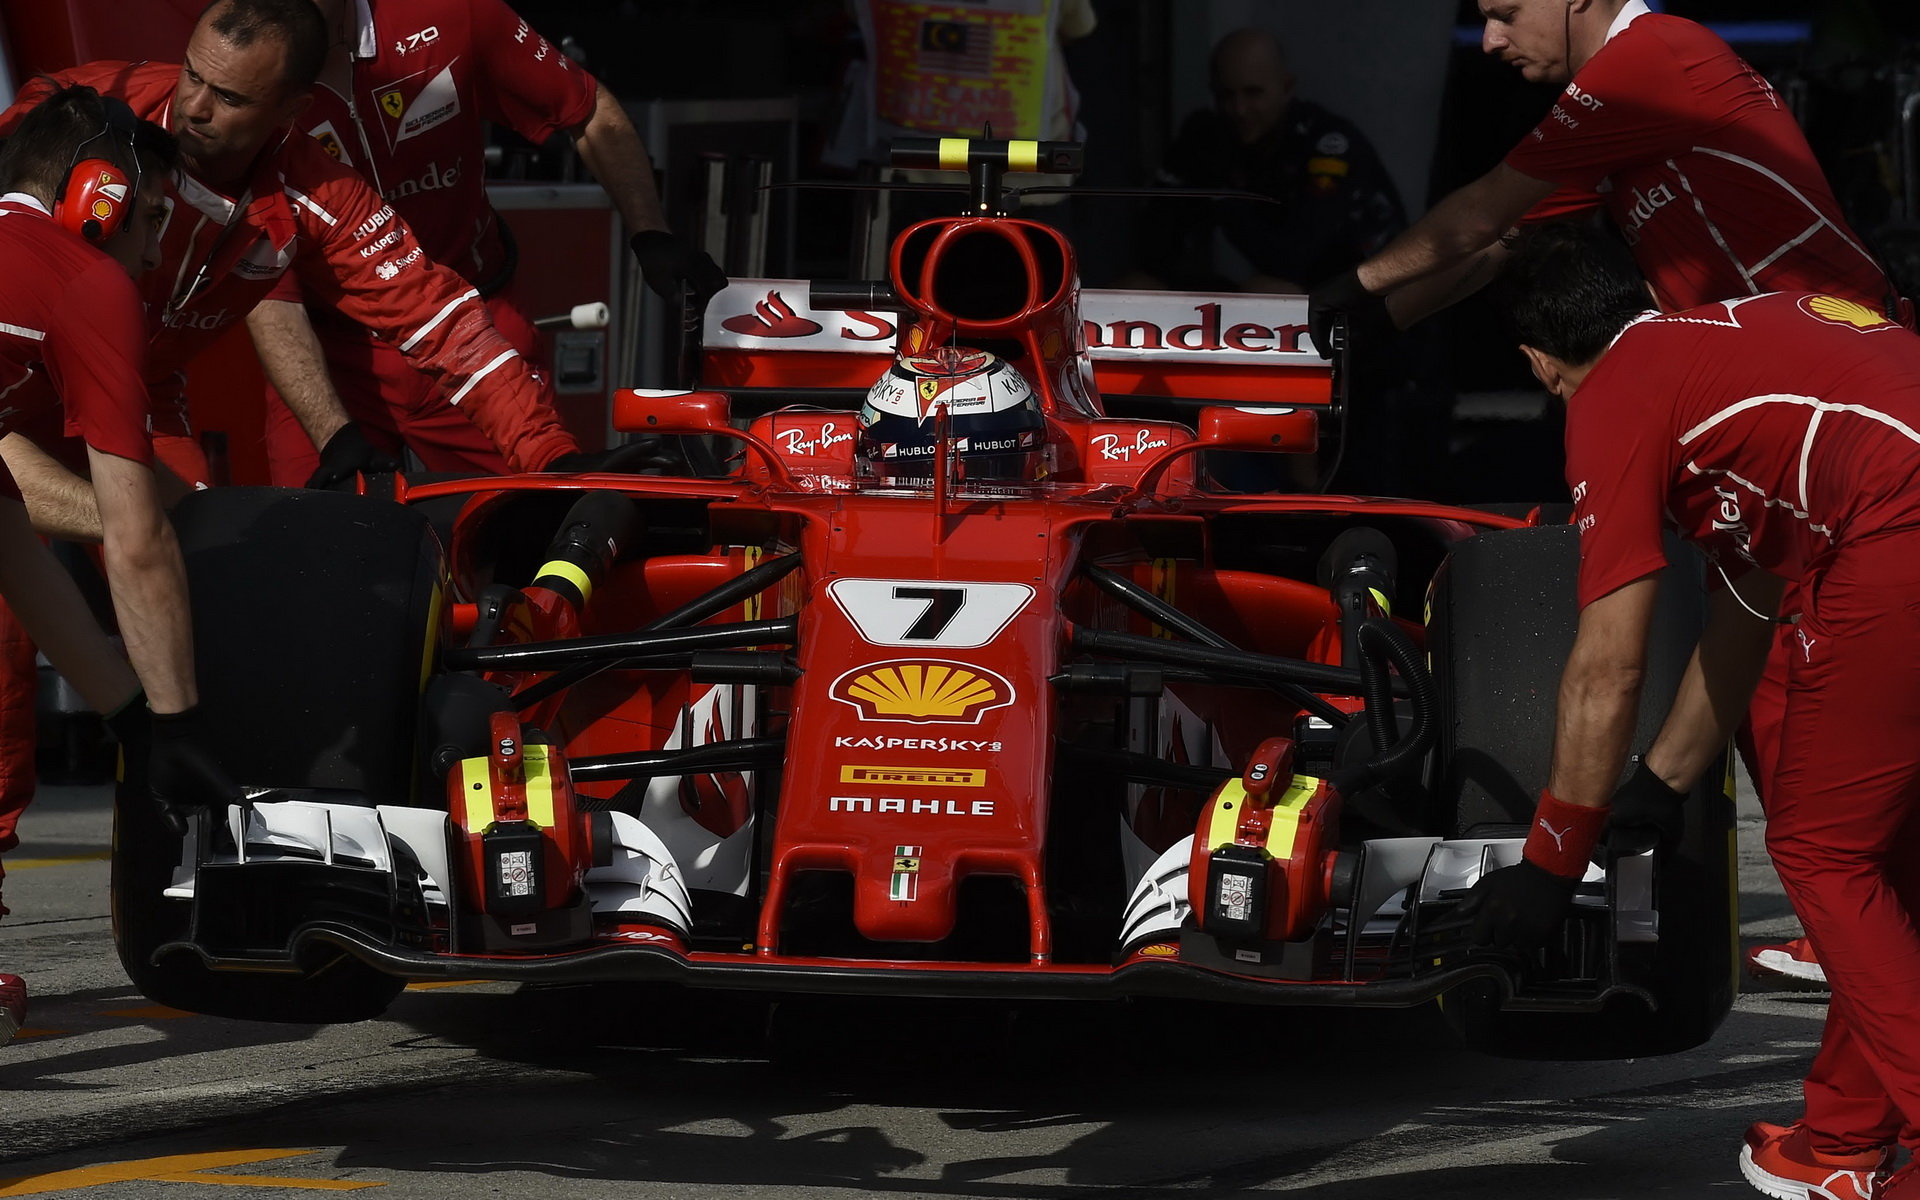 Kimi Räikkönen musel spolknout v Malajsii hořkou pilulku